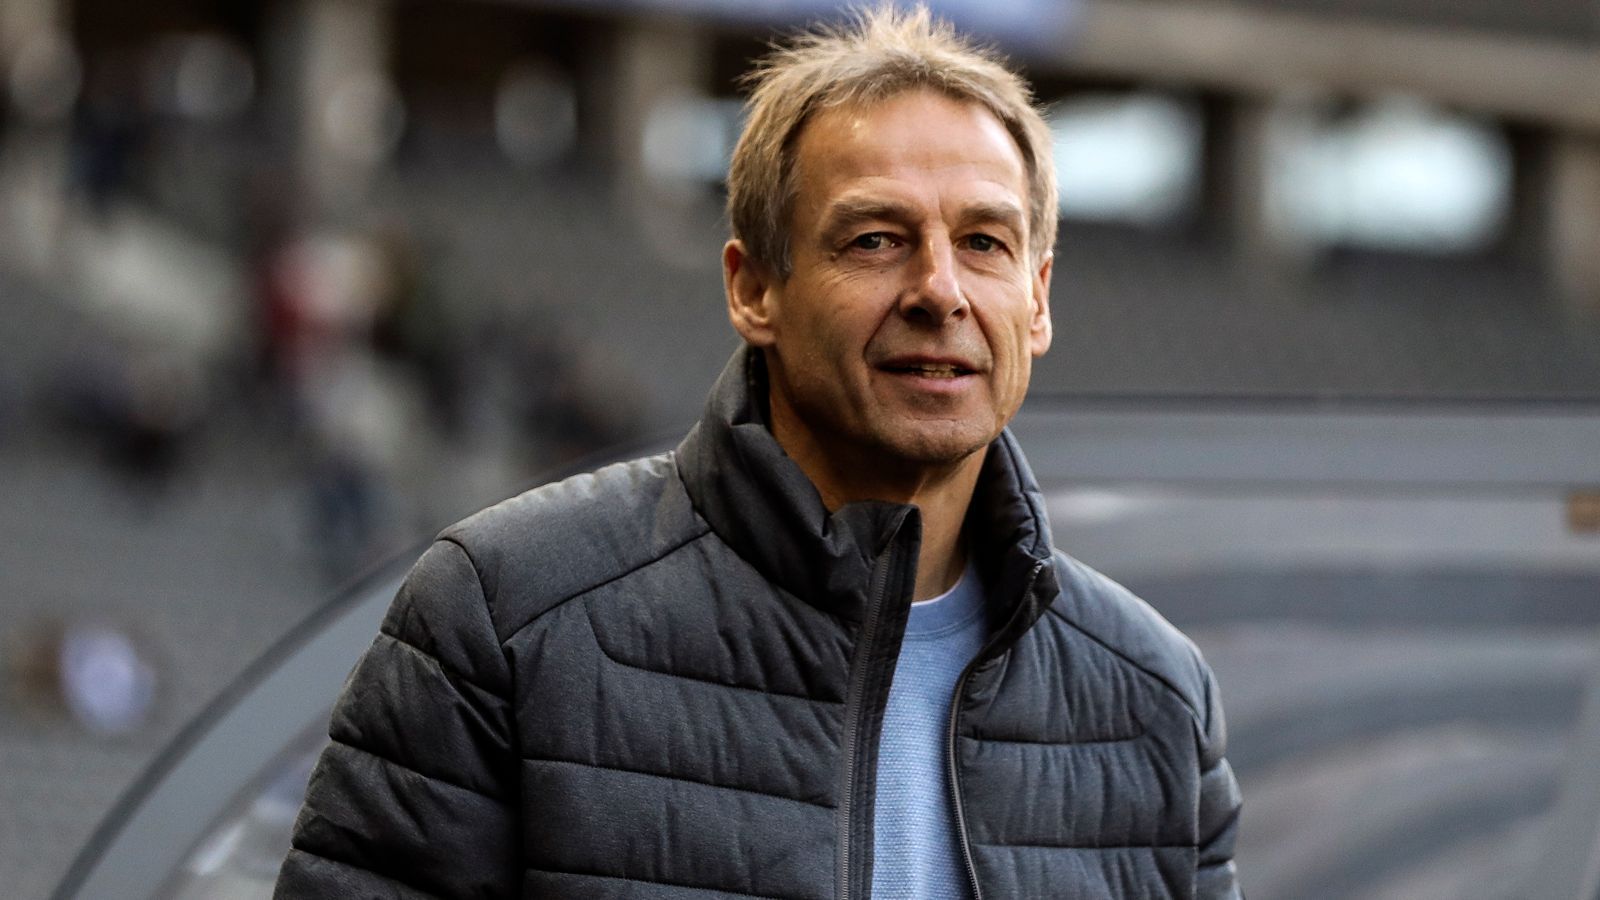 
                <strong>Jürgen Klinsmann war noch Hertha-Trainer</strong><br>
                Jürgen Klinsmann war noch Trainer von Hertha BSC und blickte dem Spiel gegen den FC Bayern München am Sonntag (19. Januar 2020) entgegen. Der Ärger um seine angeblich nicht vorhandene Trainerlizenz hatte sich gerade gelegt. "Wir haben vor Wochen einen Prozess gestartet, der wird weitergehen", versprach Klinsmann noch vor dem Spiel. Damals ahnte noch keiner, dass Klinsmann ein "geheimes" Tagebuch führte.
              